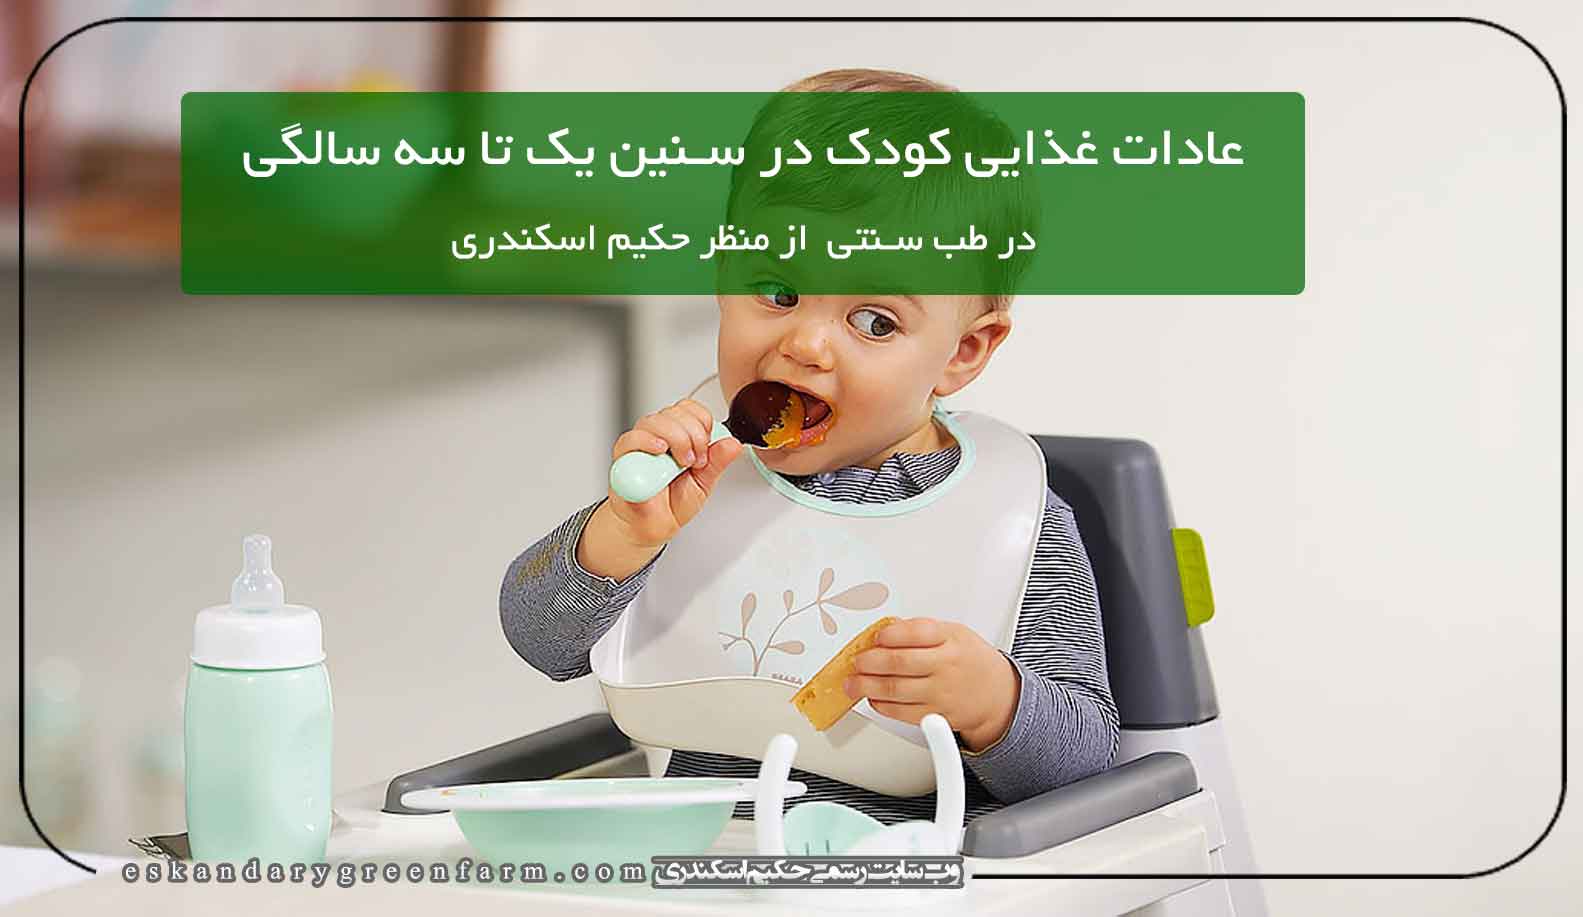 عادات غذایی کودک در سنین یک تا سه سالگی